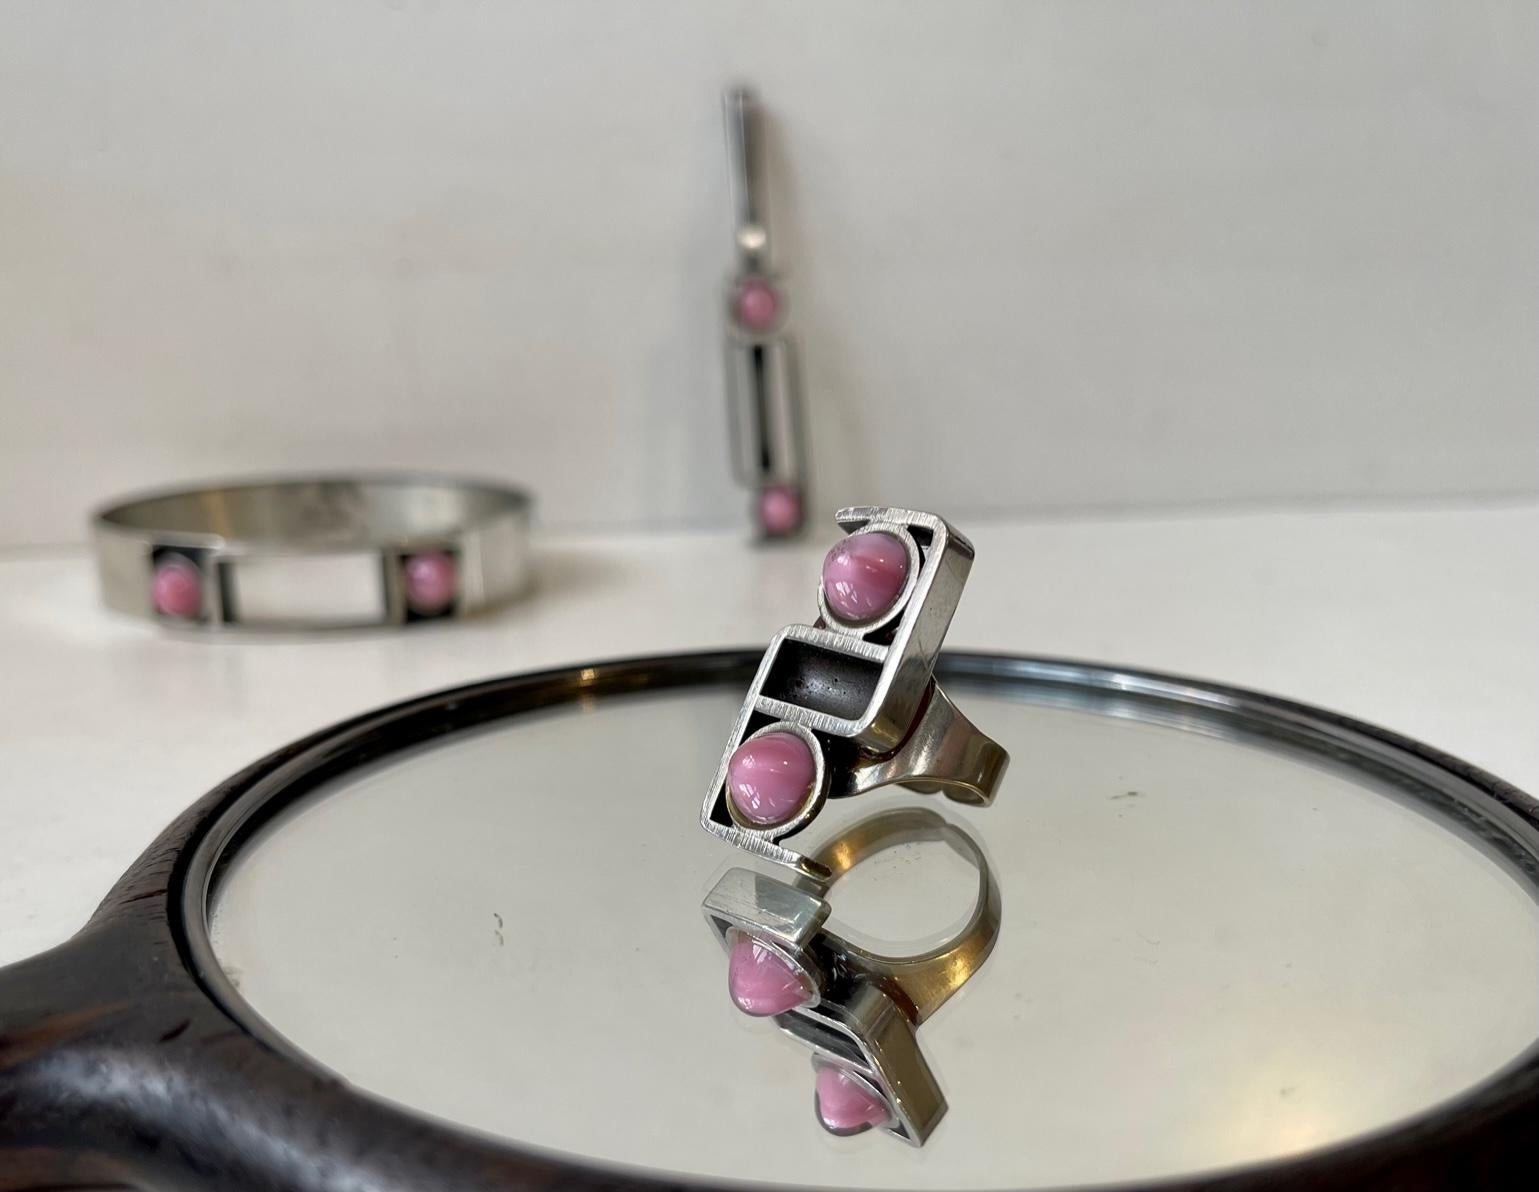 Ensemble de bijoux d'art composé d'un bracelet, d'une bague et d'un pendentif en étain sertis de pierres roses. Nous reconnaissons que les pierres roses sont soit du quartz rose, soit des pierres de lune. Cet ensemble a été fabriqué à la main dans